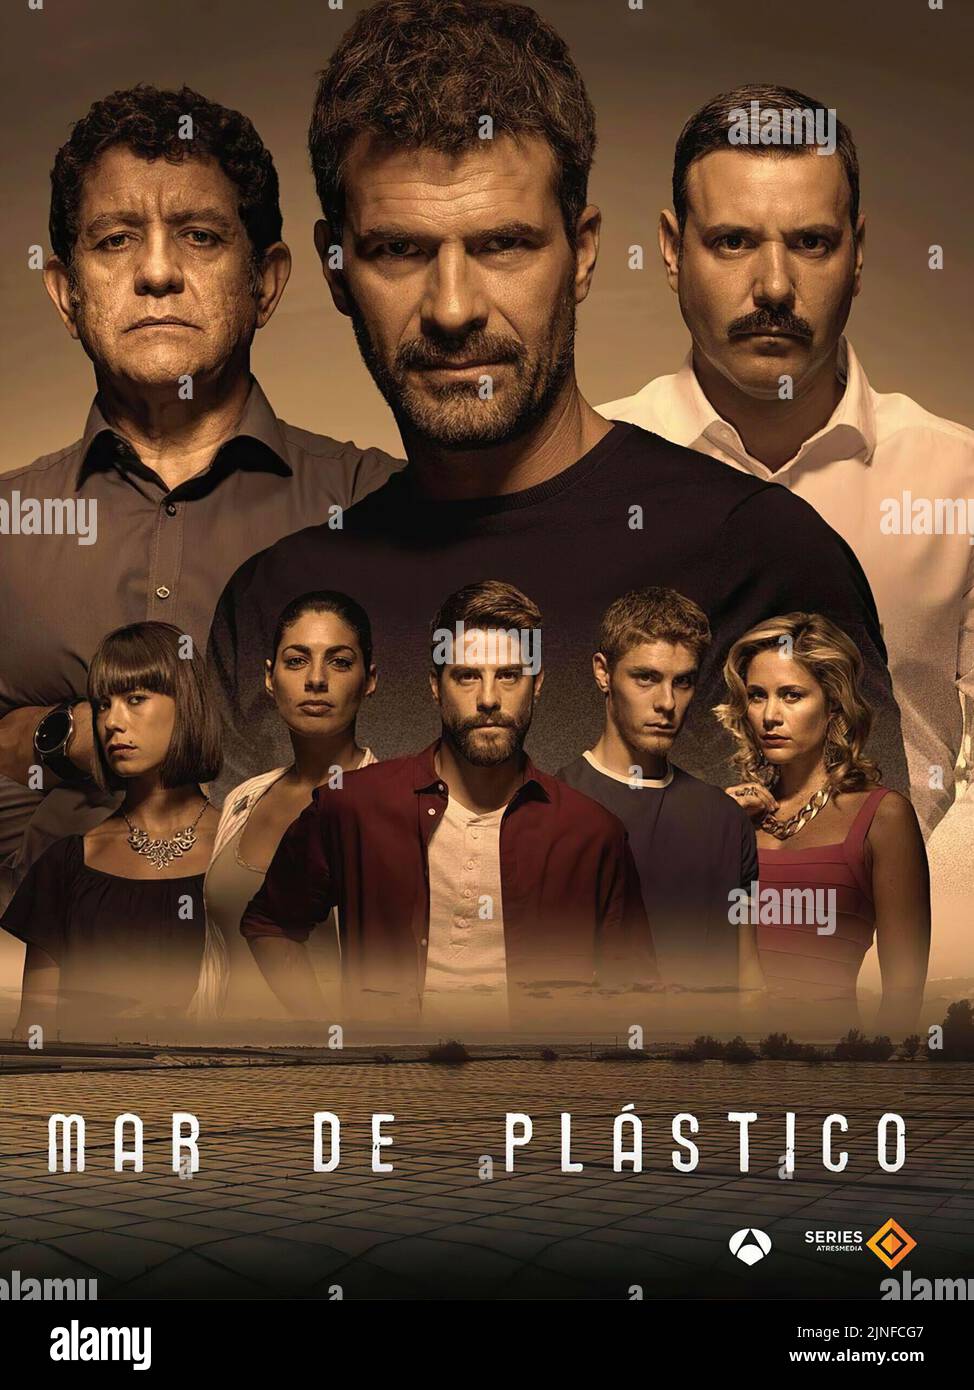 PLASTIC SEA (2015) -Título original: MAR DE PLASTICO-, dirigido por NORBERTO LÓPEZ AMADO y ALEJANDRO BAZZANO. Crédito: Bumerang TV / Album Foto de stock